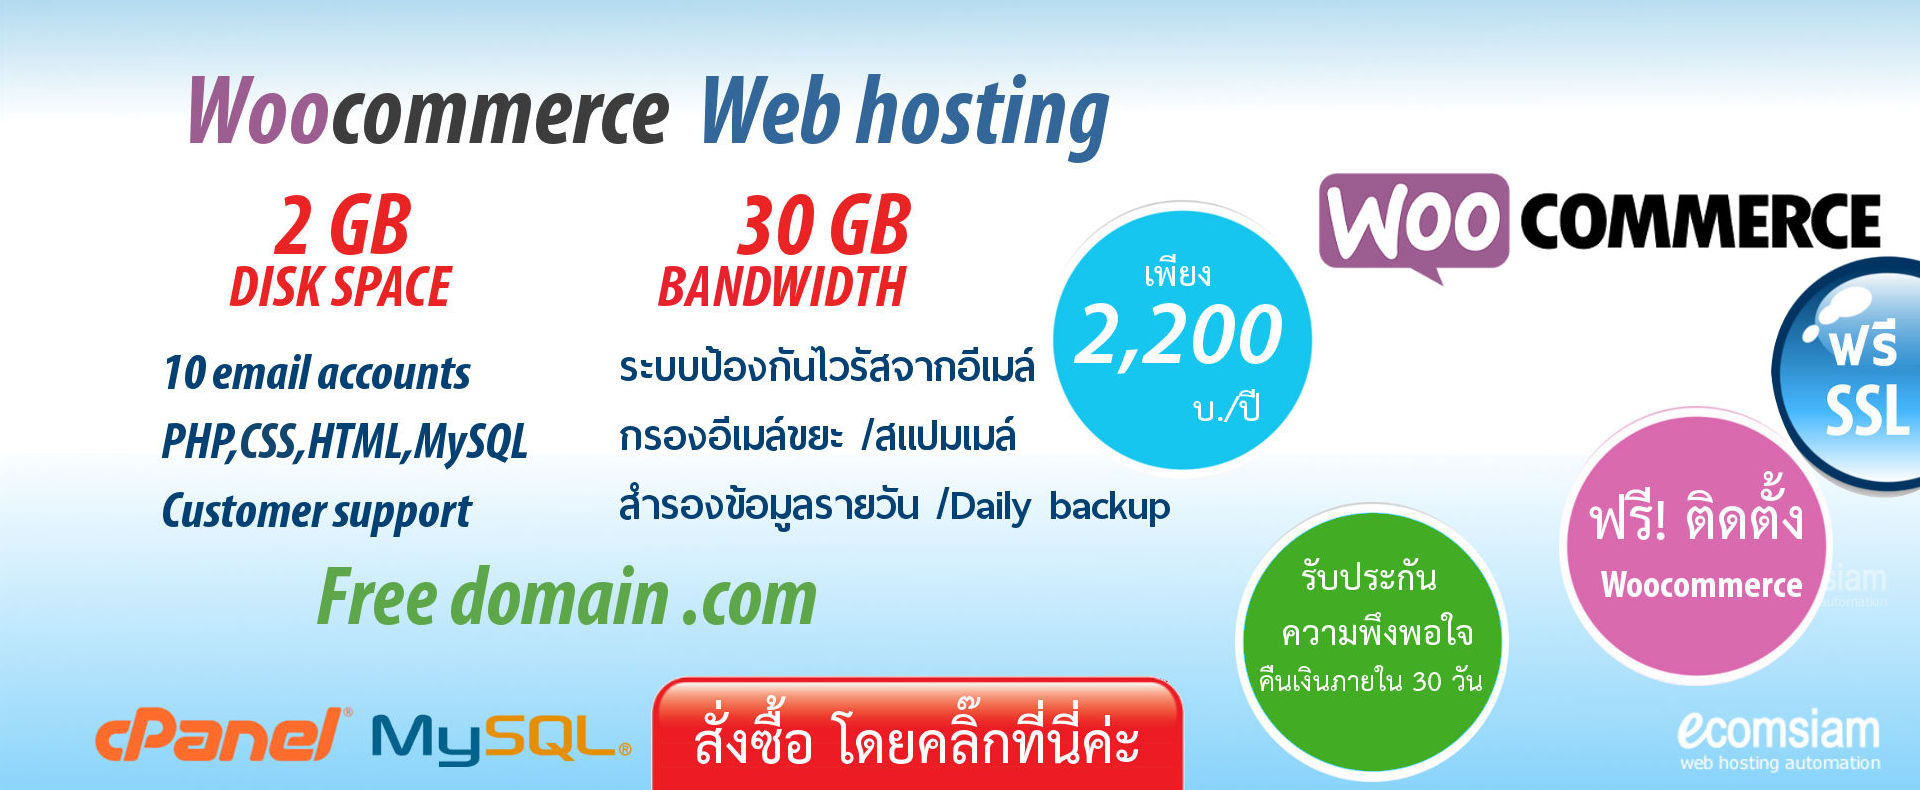 woocommerce hosting plan thai เว็บโฮสติ้งไทย ฟรีโดเมน ฟรี SSL สำหรับองค์กร ที่ต้องการใช้งานเว็บไซต์และฐานข้อมูล เริ่มต้นเพียง 2,200 บาทต่อปี